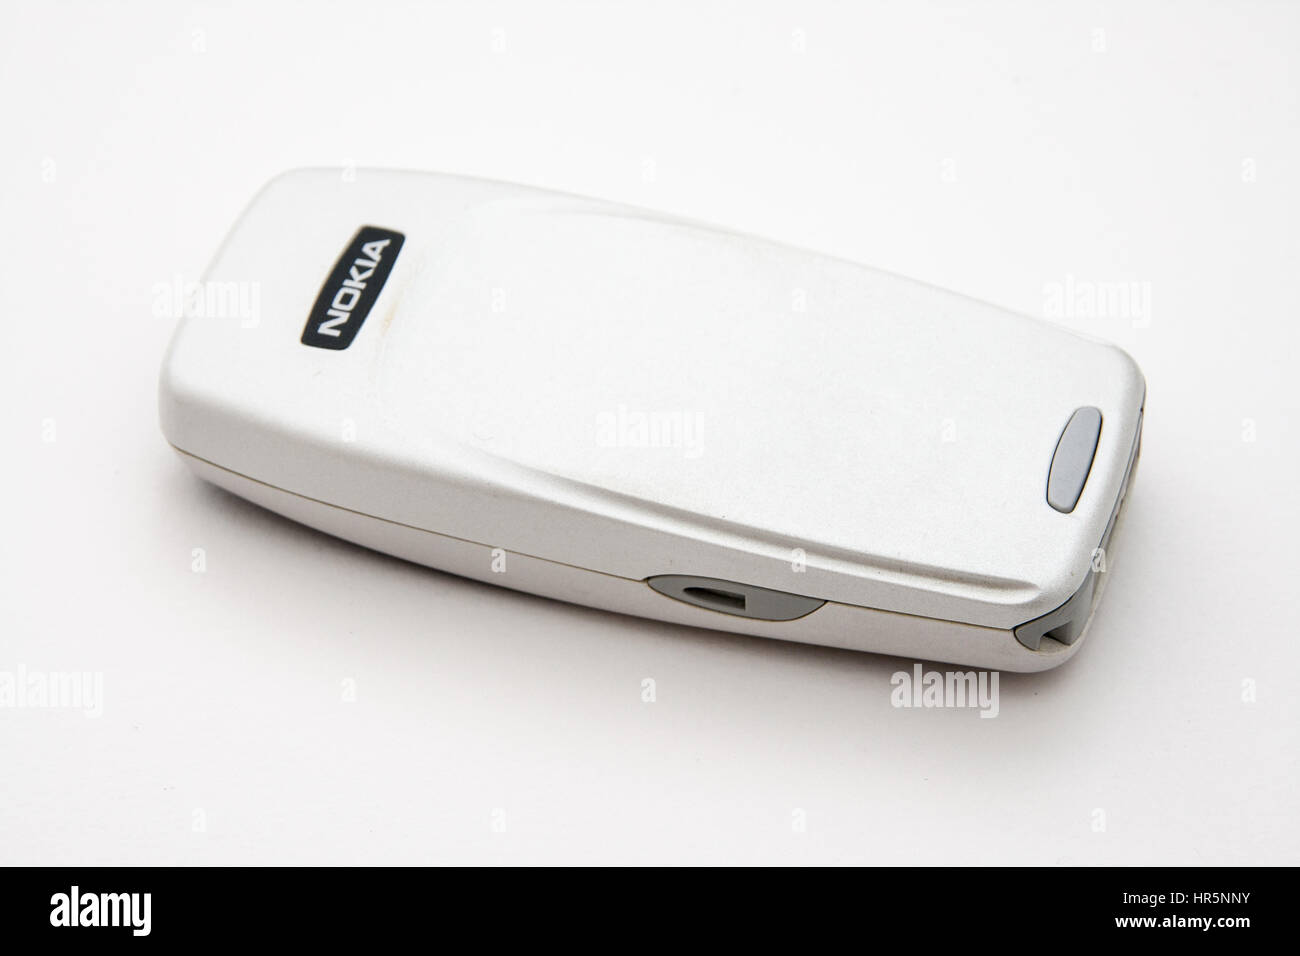 Rome, Italie - Février 02, 2013 : ancien téléphone Nokia isolé sur fond blanc Banque D'Images